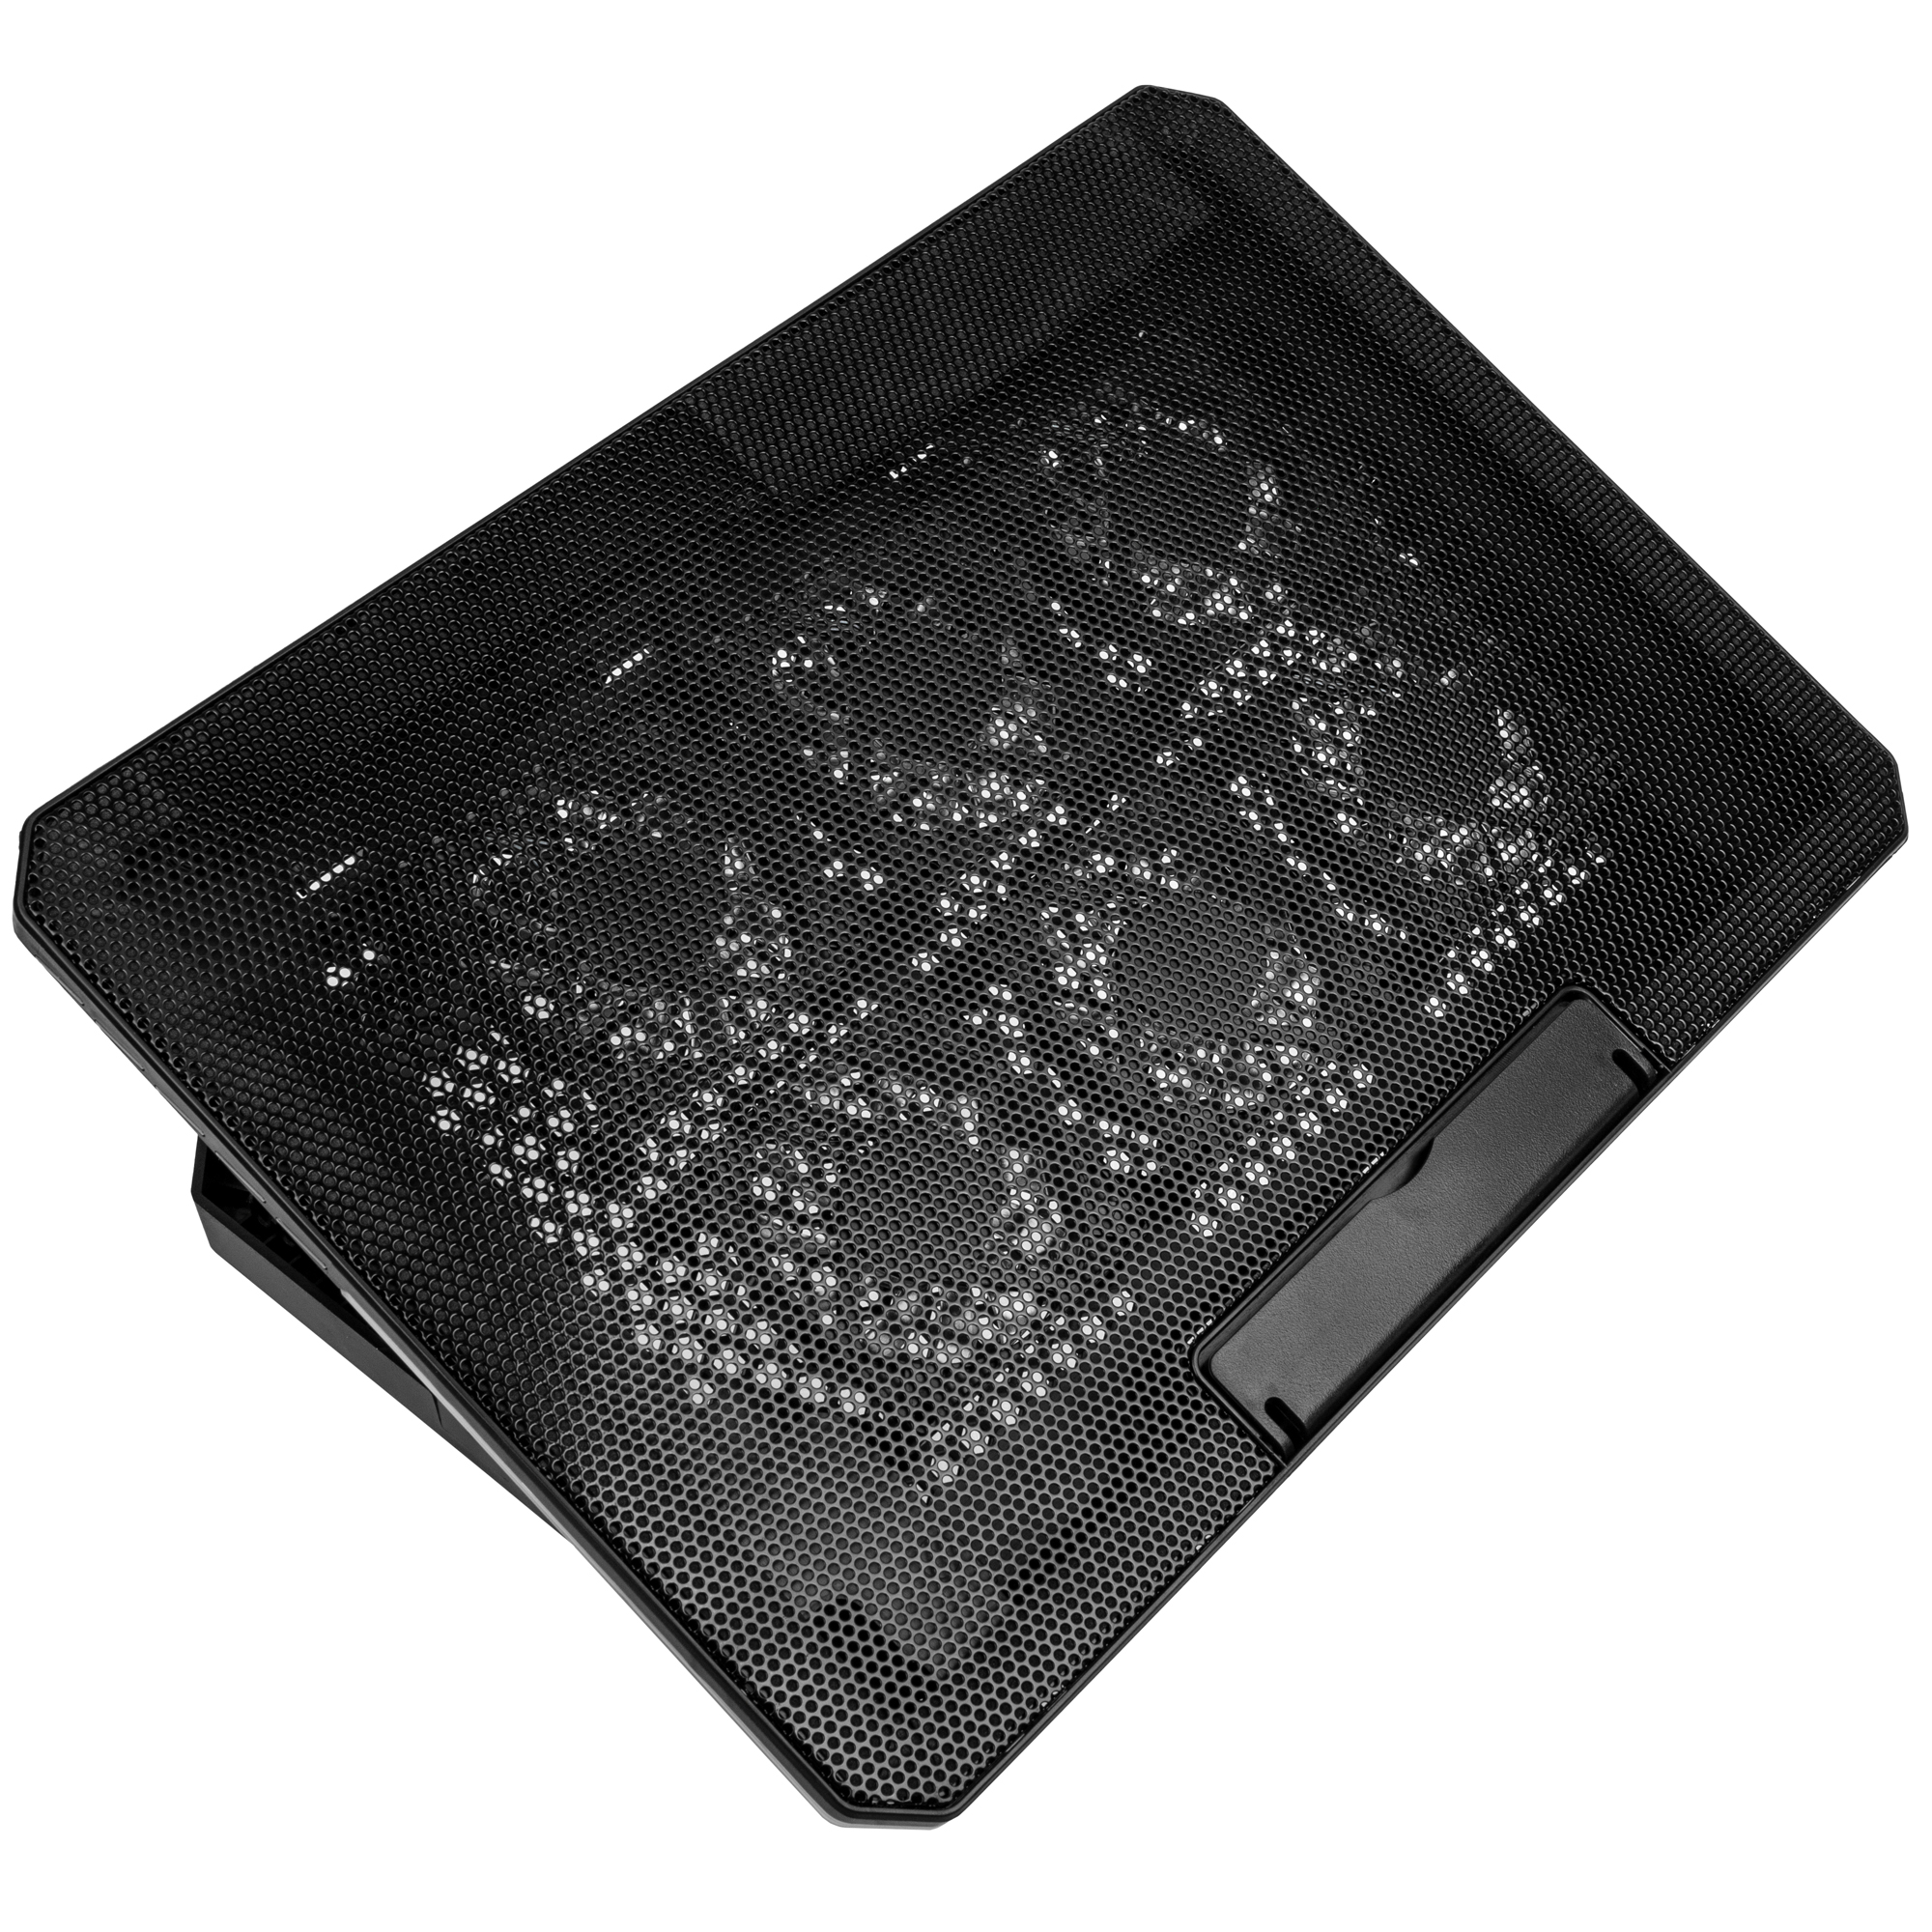 Kolink - Kolink KL-F500 17.3" ARGB Laptop/Notebook Cooler